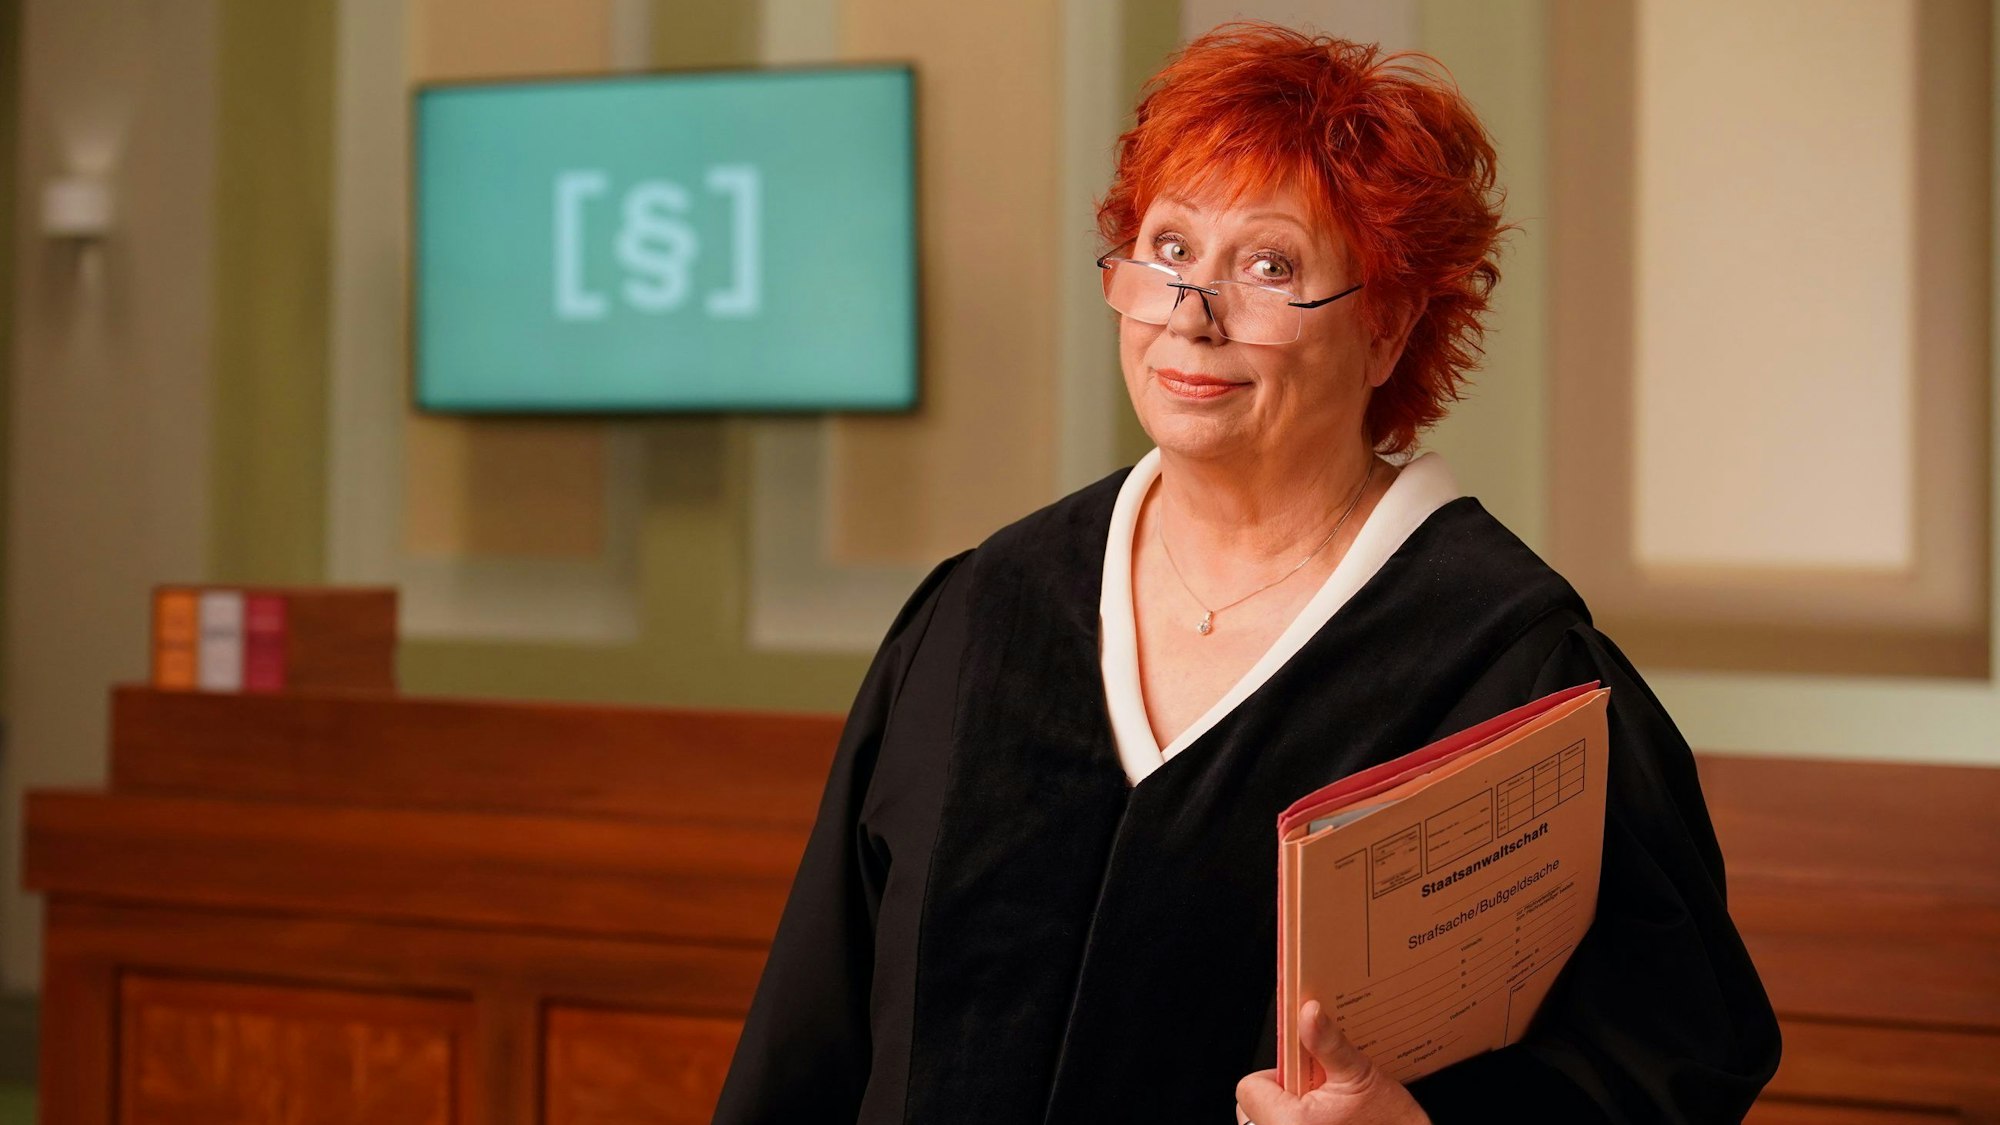 Richterin Barbara Salesch

bei RTL